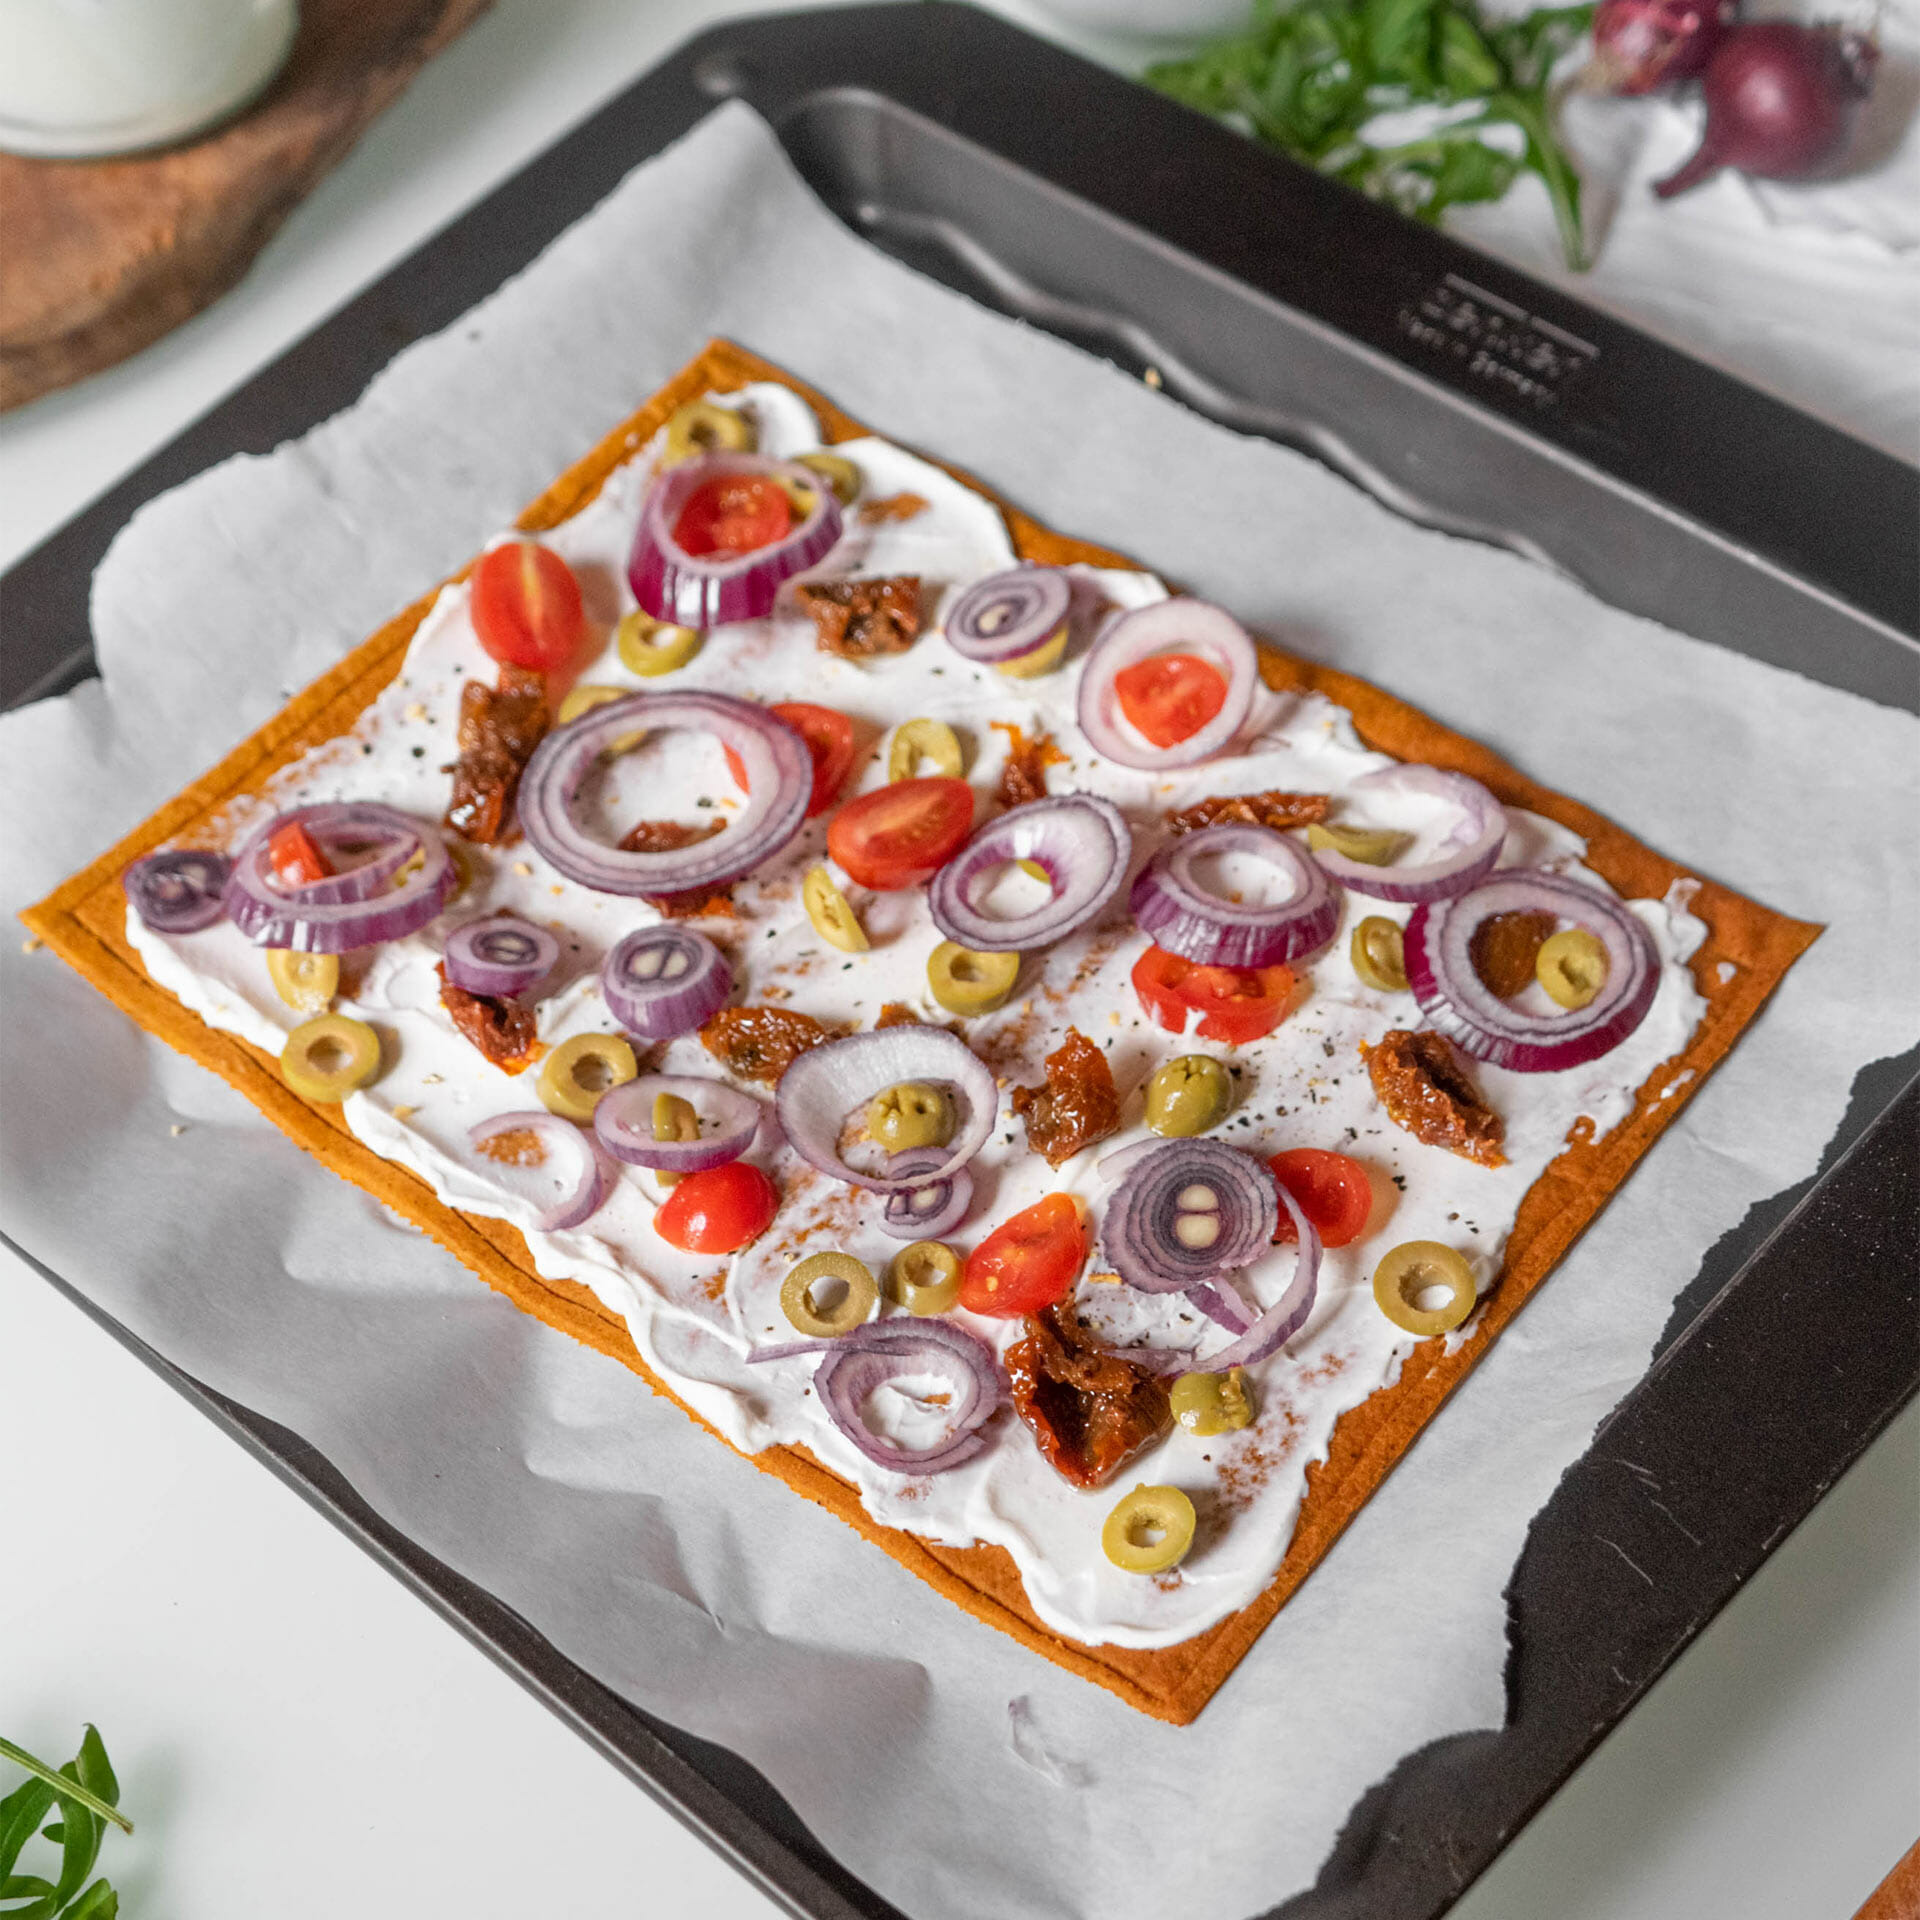 Pizzaboden als Flammkuchen mit Creme Fraîche belegt mit Tomaten, getrockneten Tomaten, Oliven, roten Zwiebeln noch ungebacken